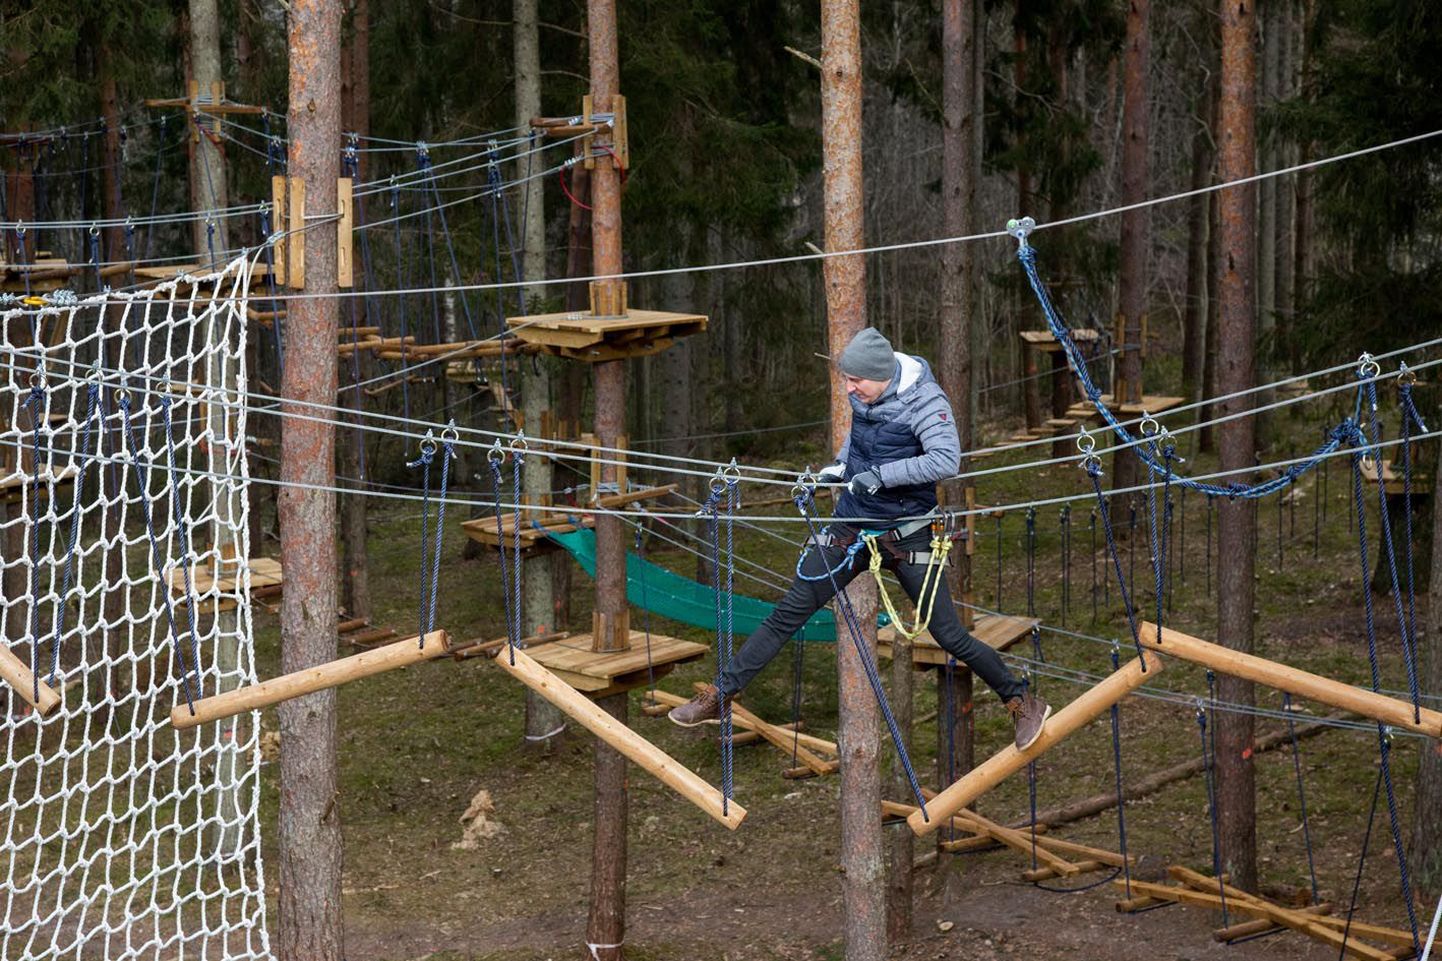 Sulo Särkinen on ise suur seiklusparkide fänn ja Türilgi on tal esimesed katsetused puude vahel kulgevatel ronimisradadel tehtud.